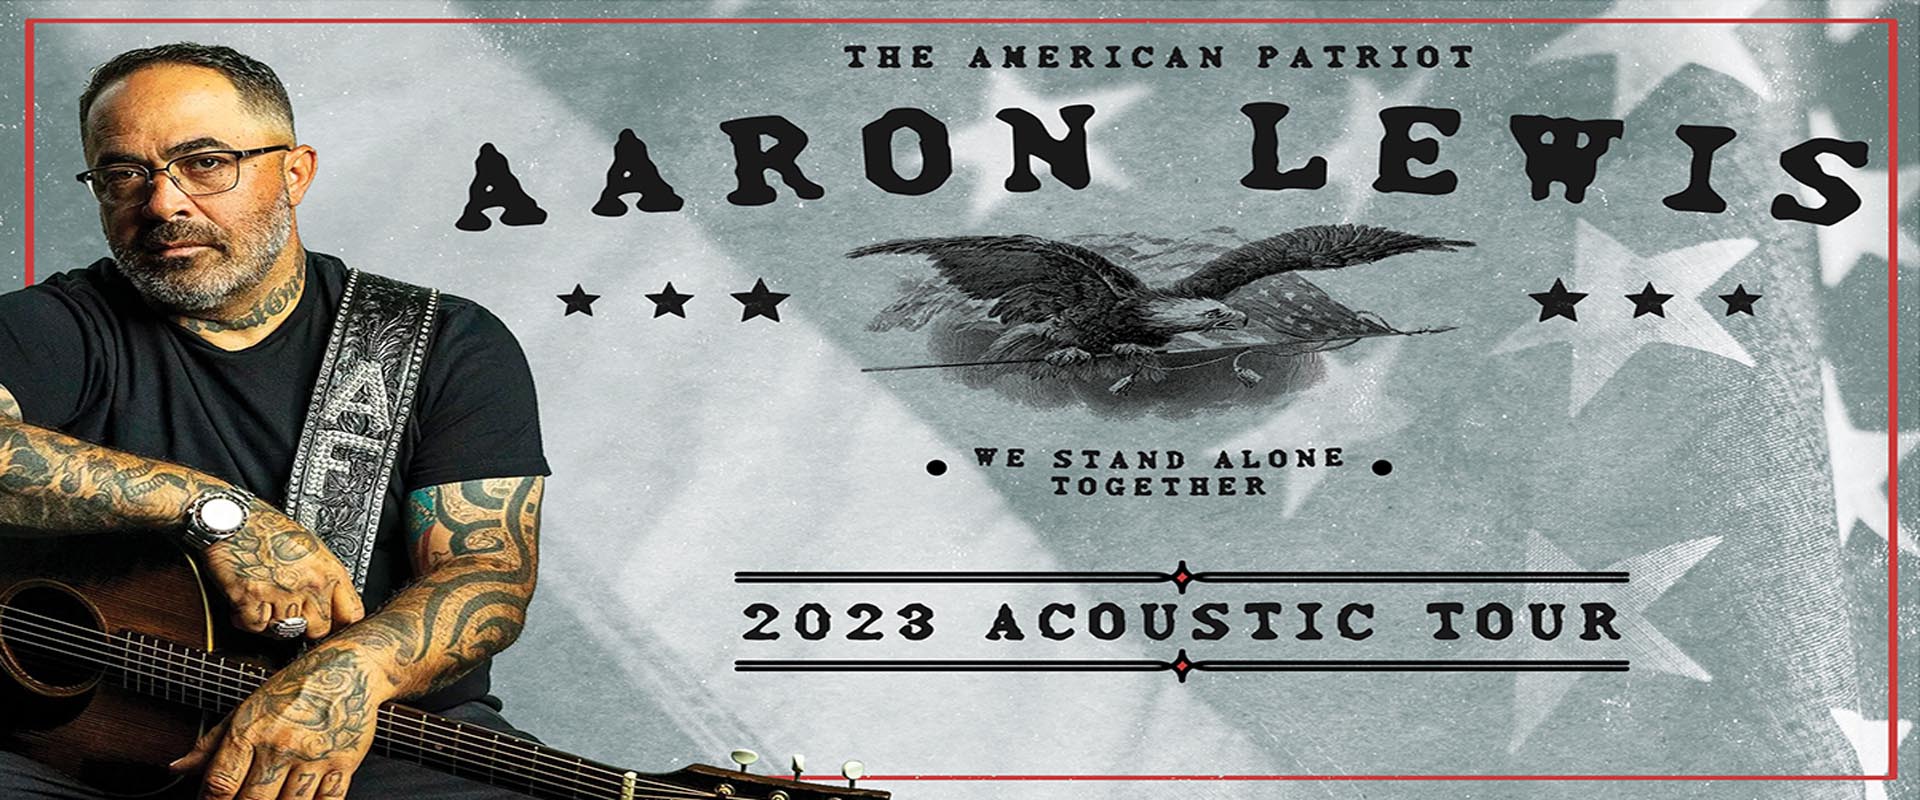 Aaron Lewis 2023 Acoustic Tour